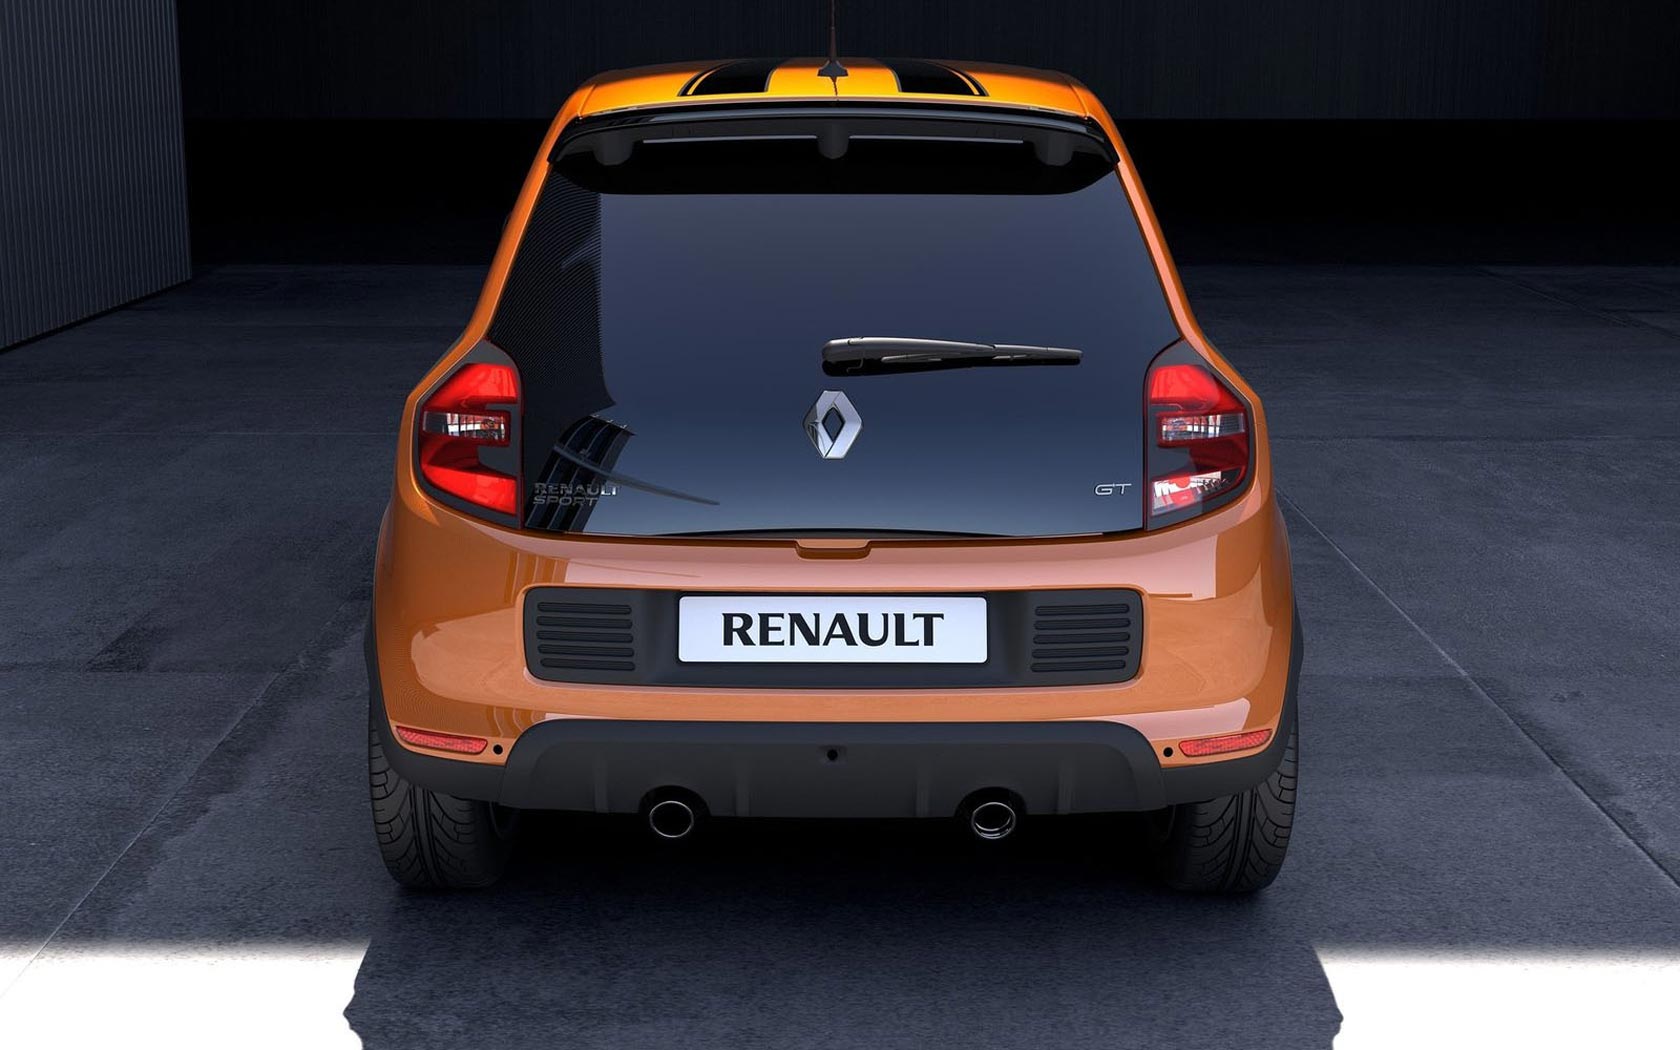  Renault Twingo GT 